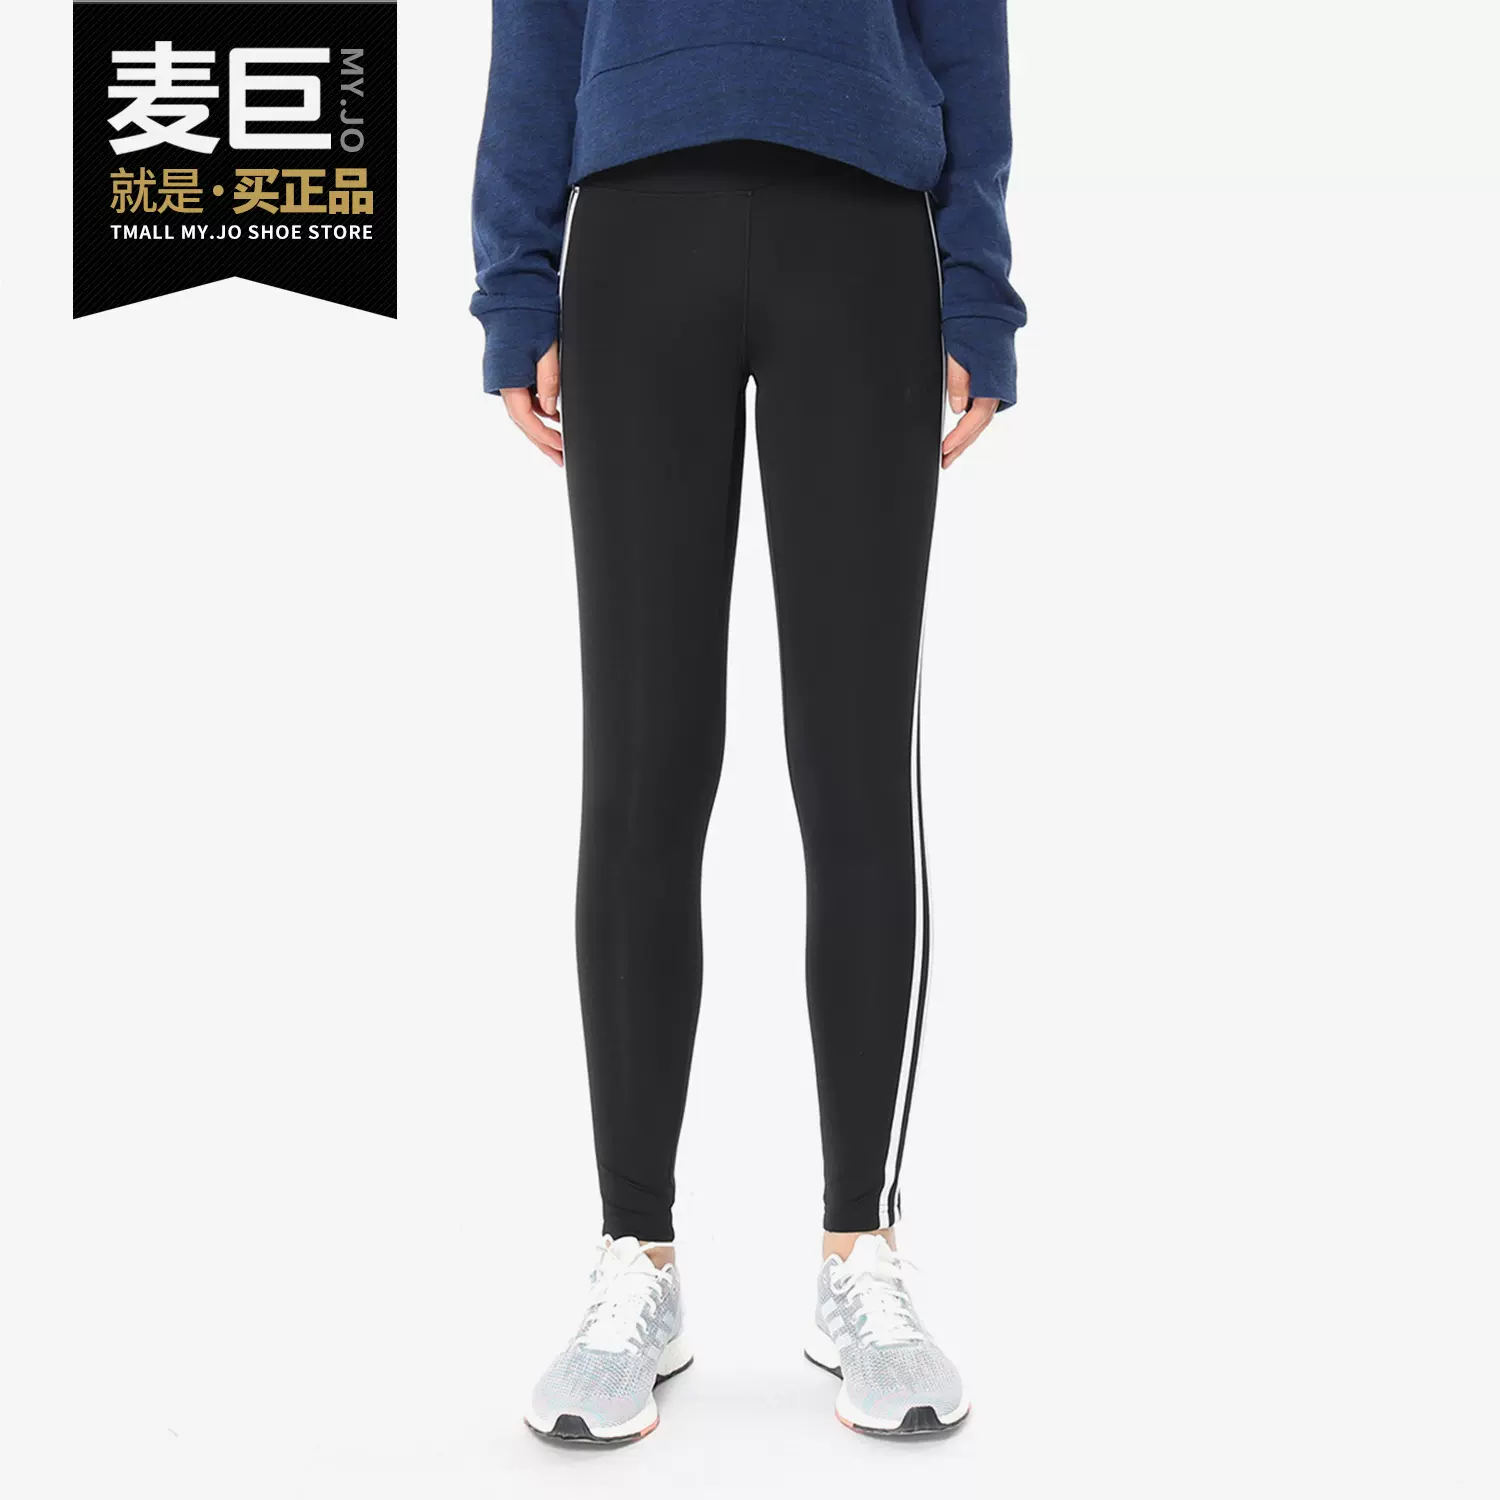 confesar capacidad Fuente Adidas/Adidas正品2020春夏新款女子休閒運動緊身訓練褲CE2036 - Taobao